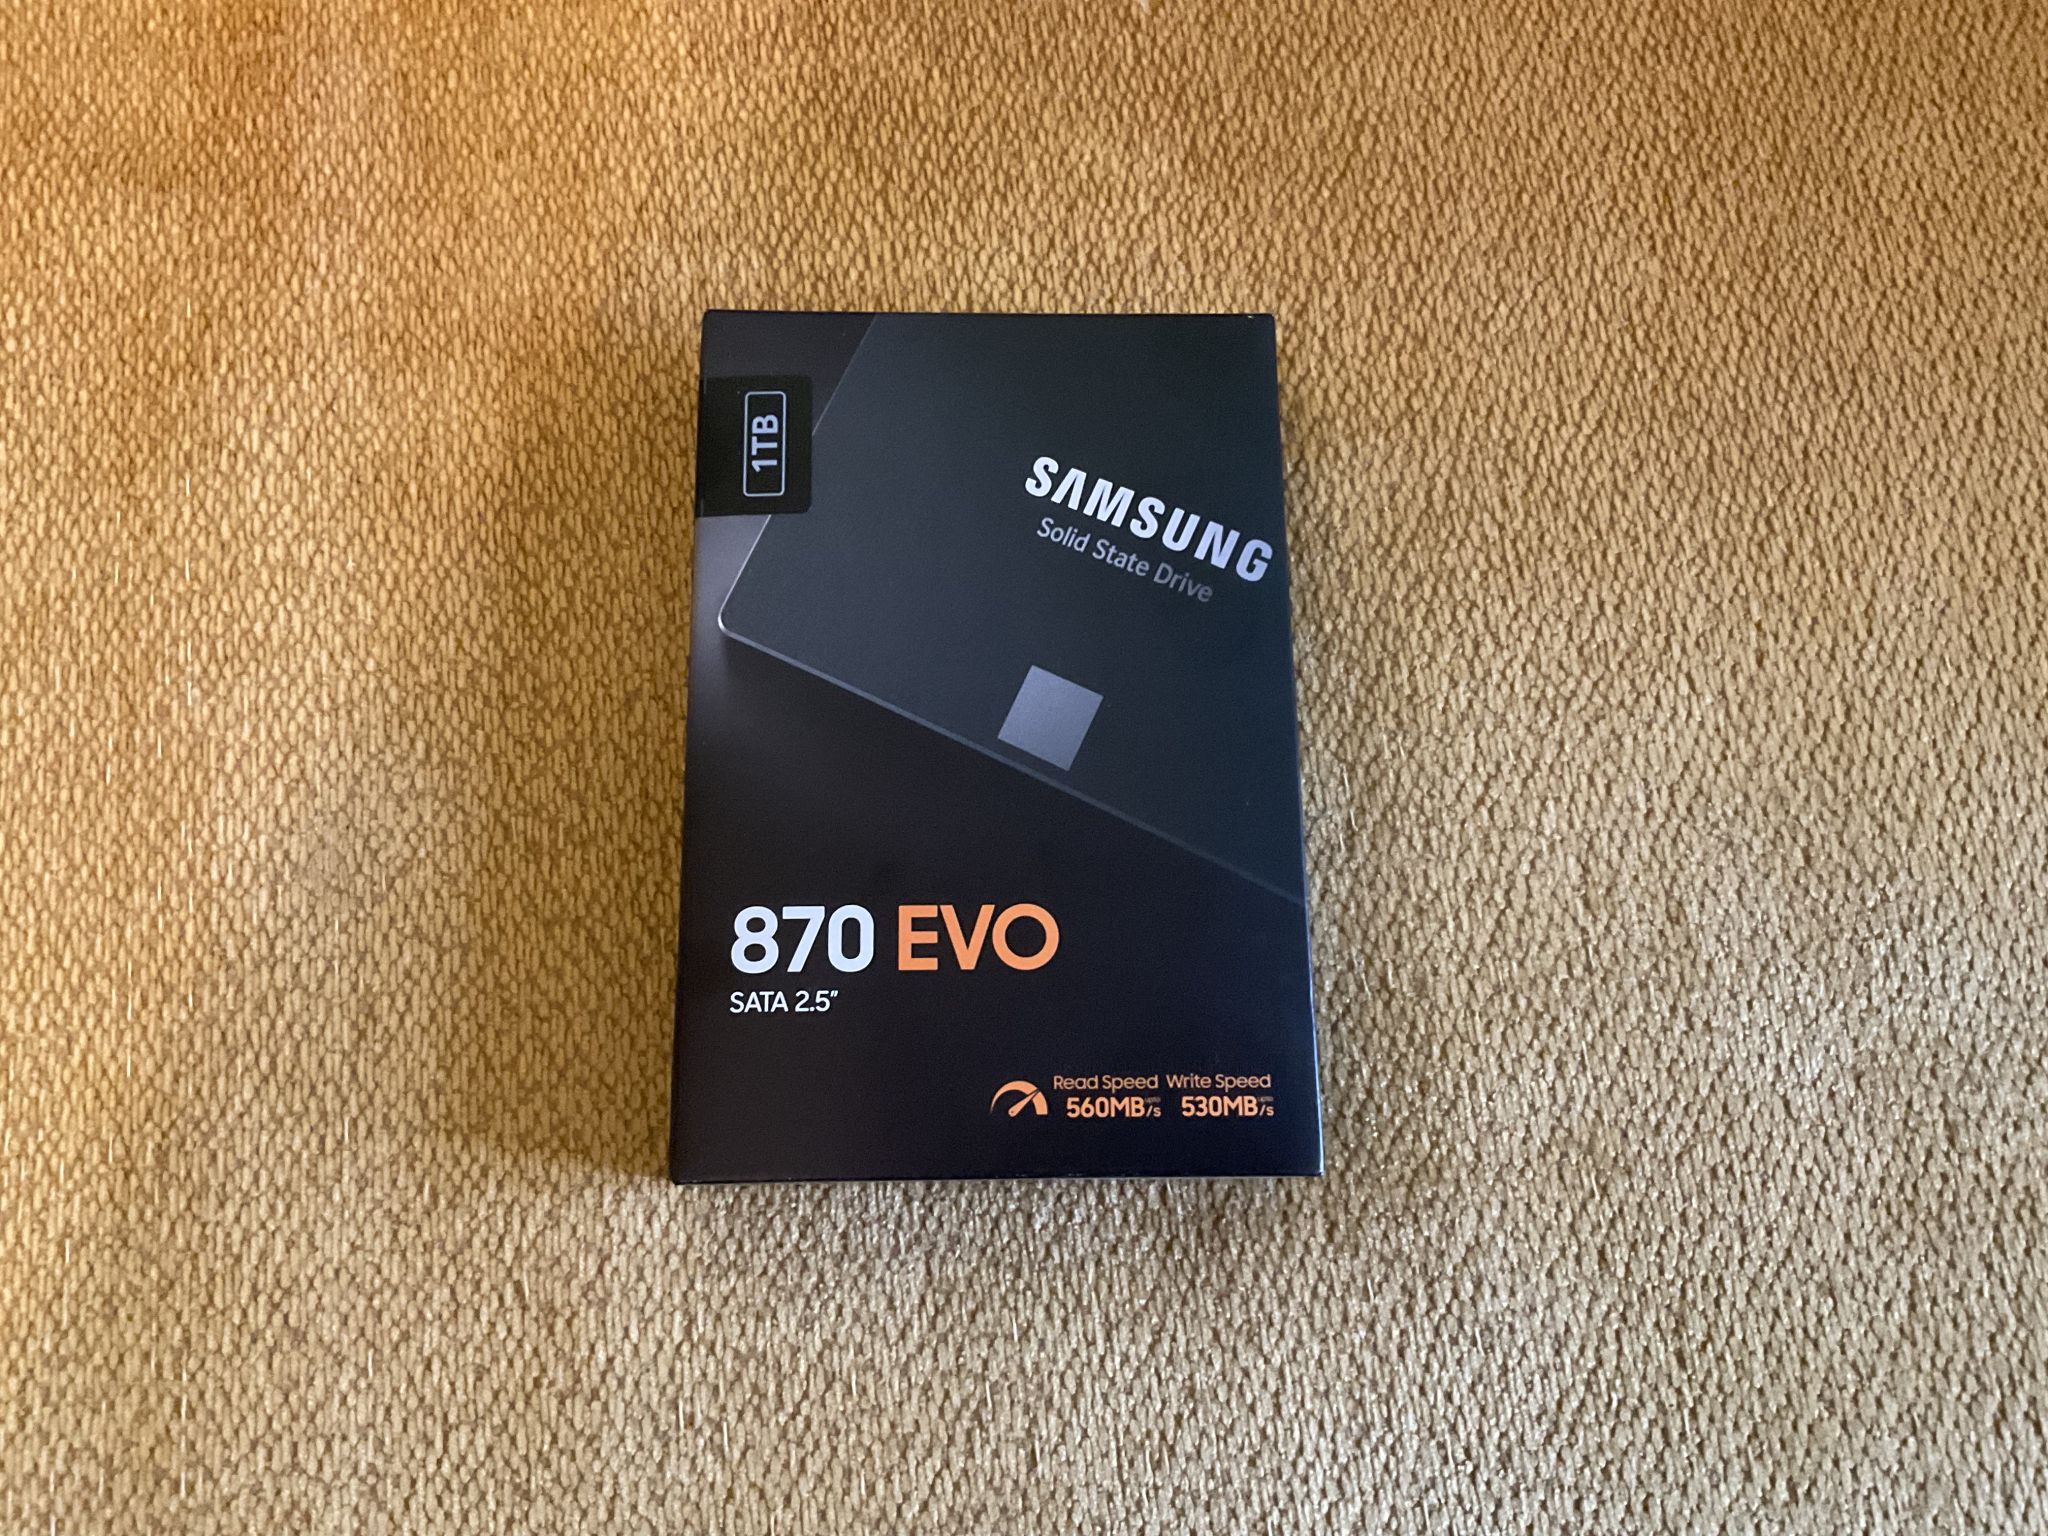 870 evo 2tb. SSD Samsung 870 EVO 1tb. Samsung 870 QVO 1tb. Samsung 870 EVO 2.5 1tb MZ-77e1t0. SSD Samsung 870 EVO 1tb плата.